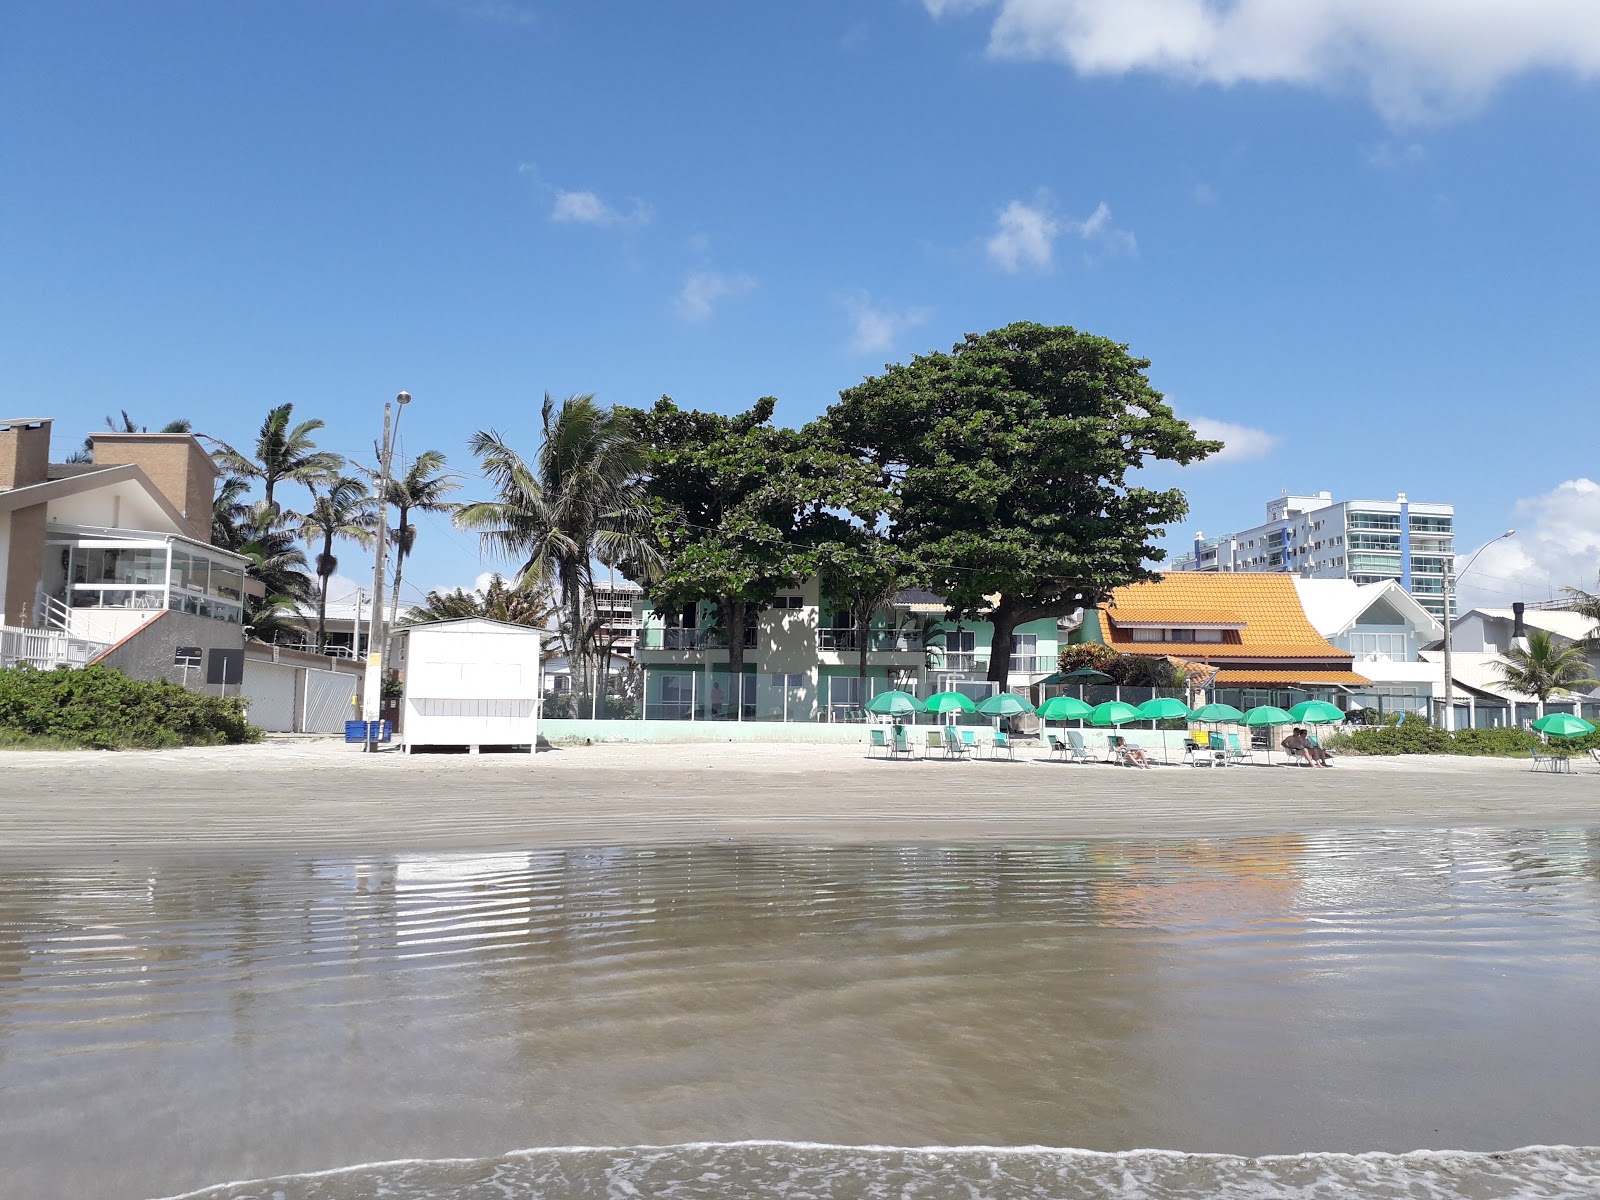 Praia do Pereque'in fotoğrafı ve yerleşim